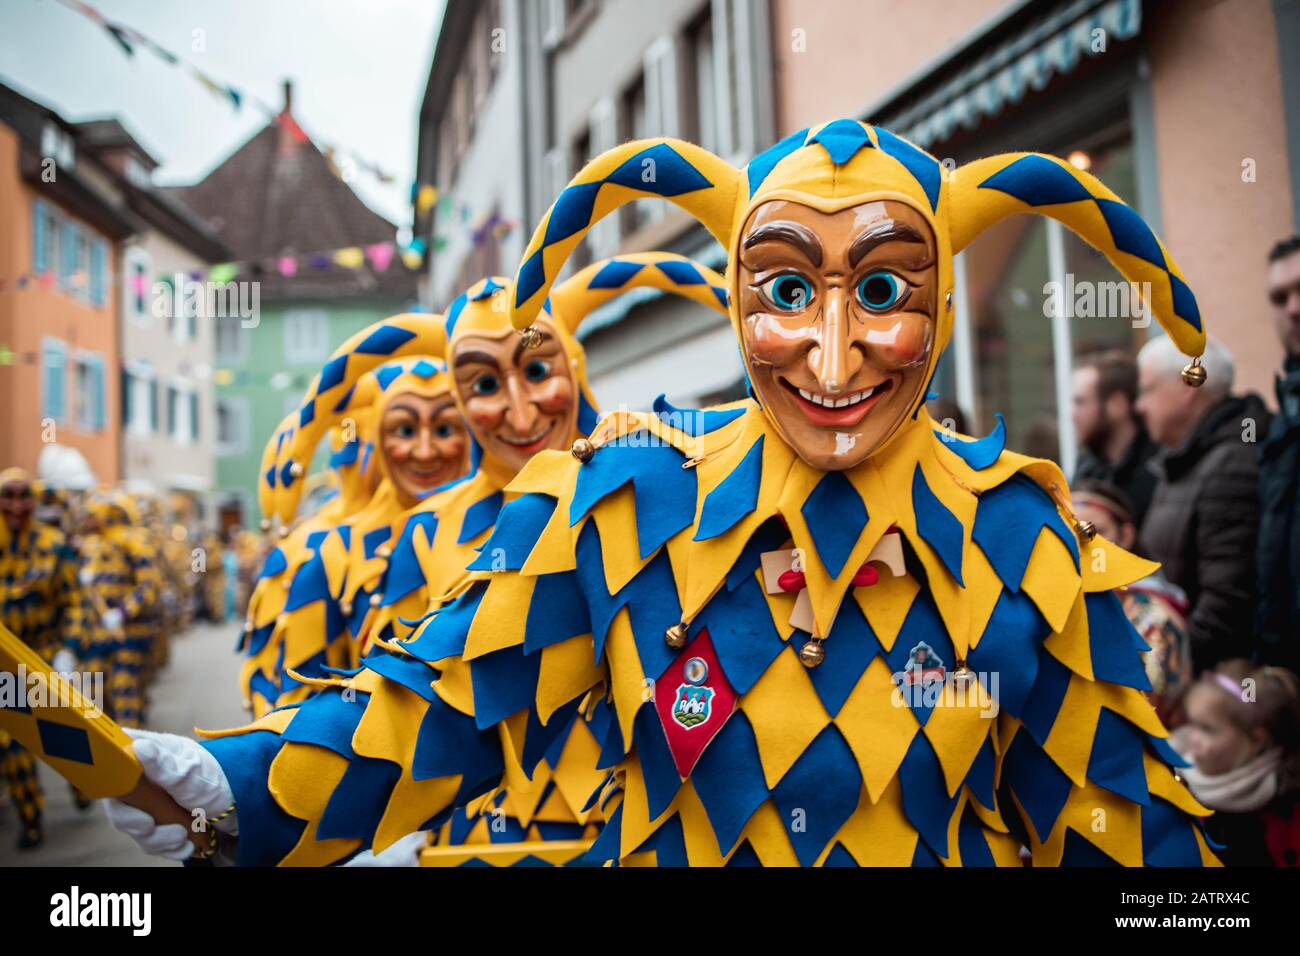 Bajass de Waldkirch - des personnages joyaux en robe jaune et bleue mars dans un grand groupe pendant le défilé de carnaval à Staufen, dans le sud de l'Allemagne Banque D'Images